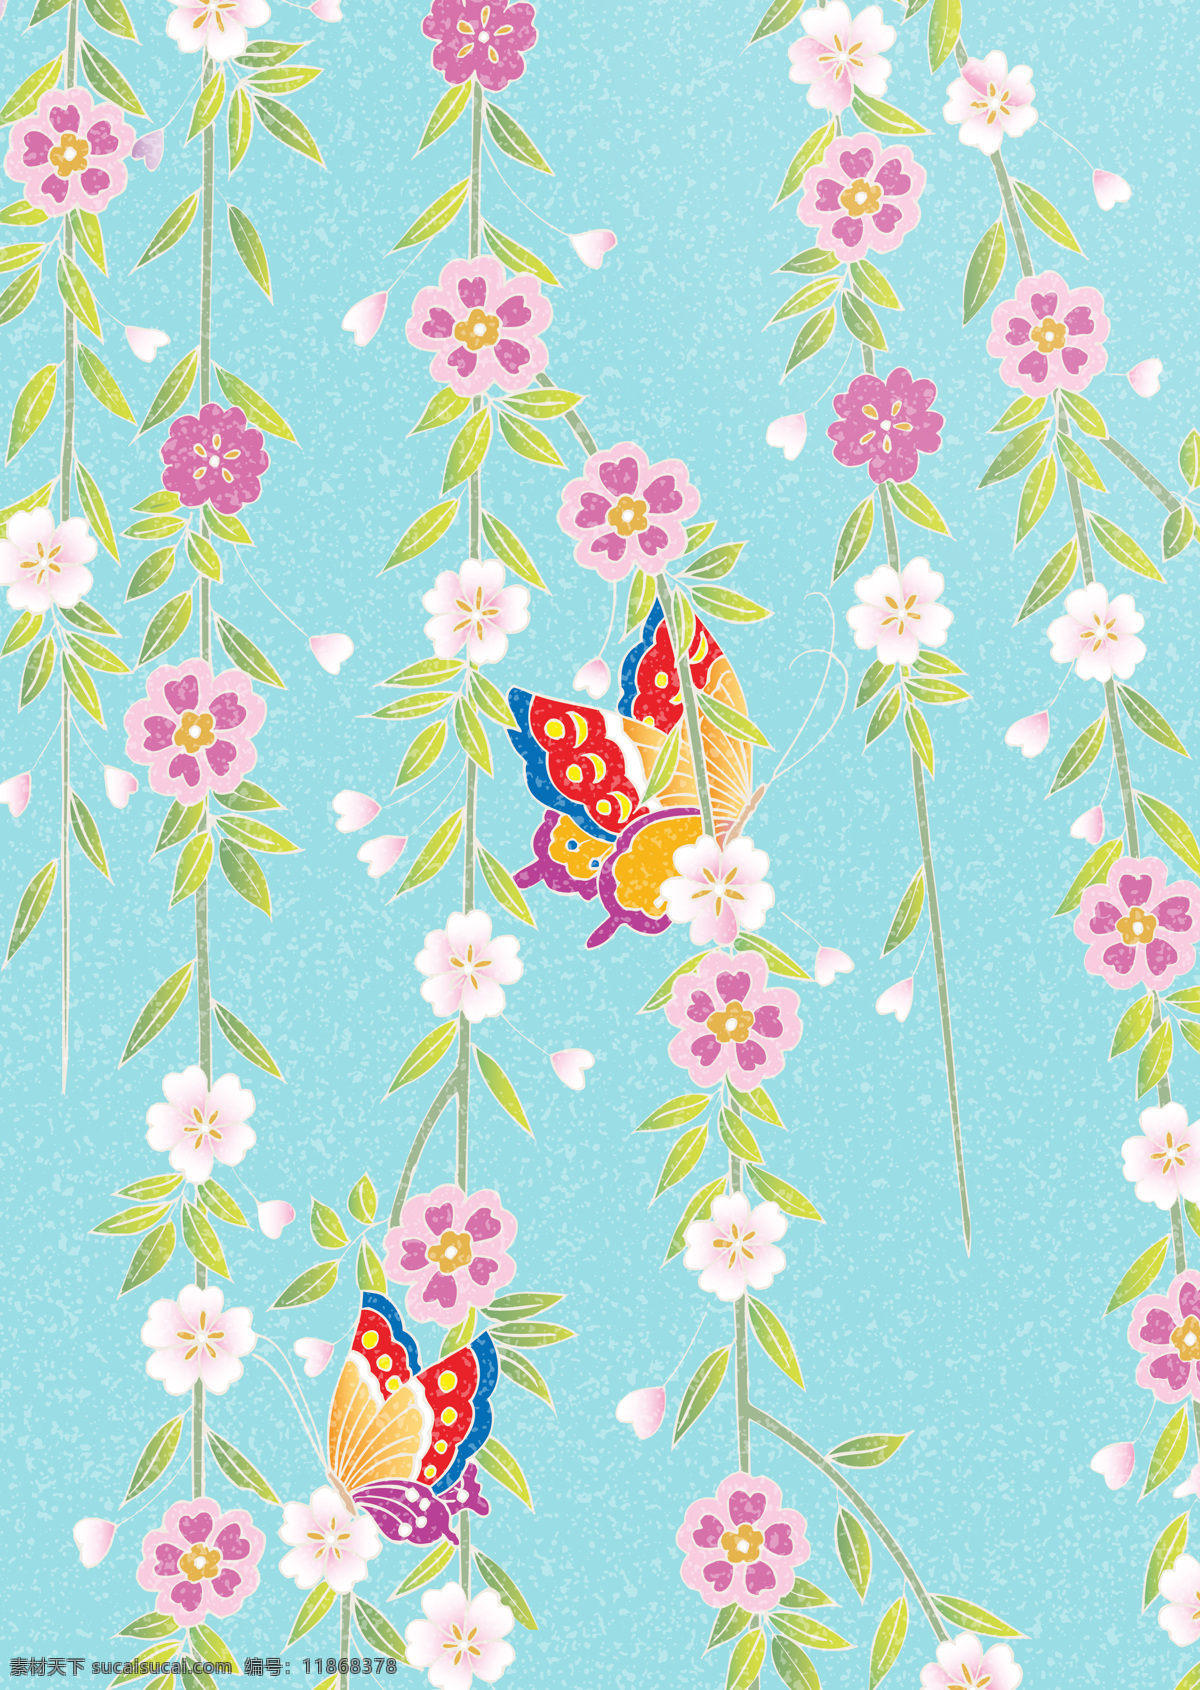 日式和风背景 日式 和风 背景 底纹 花朵 素雅 蝴蝶 背景底纹 底纹边框